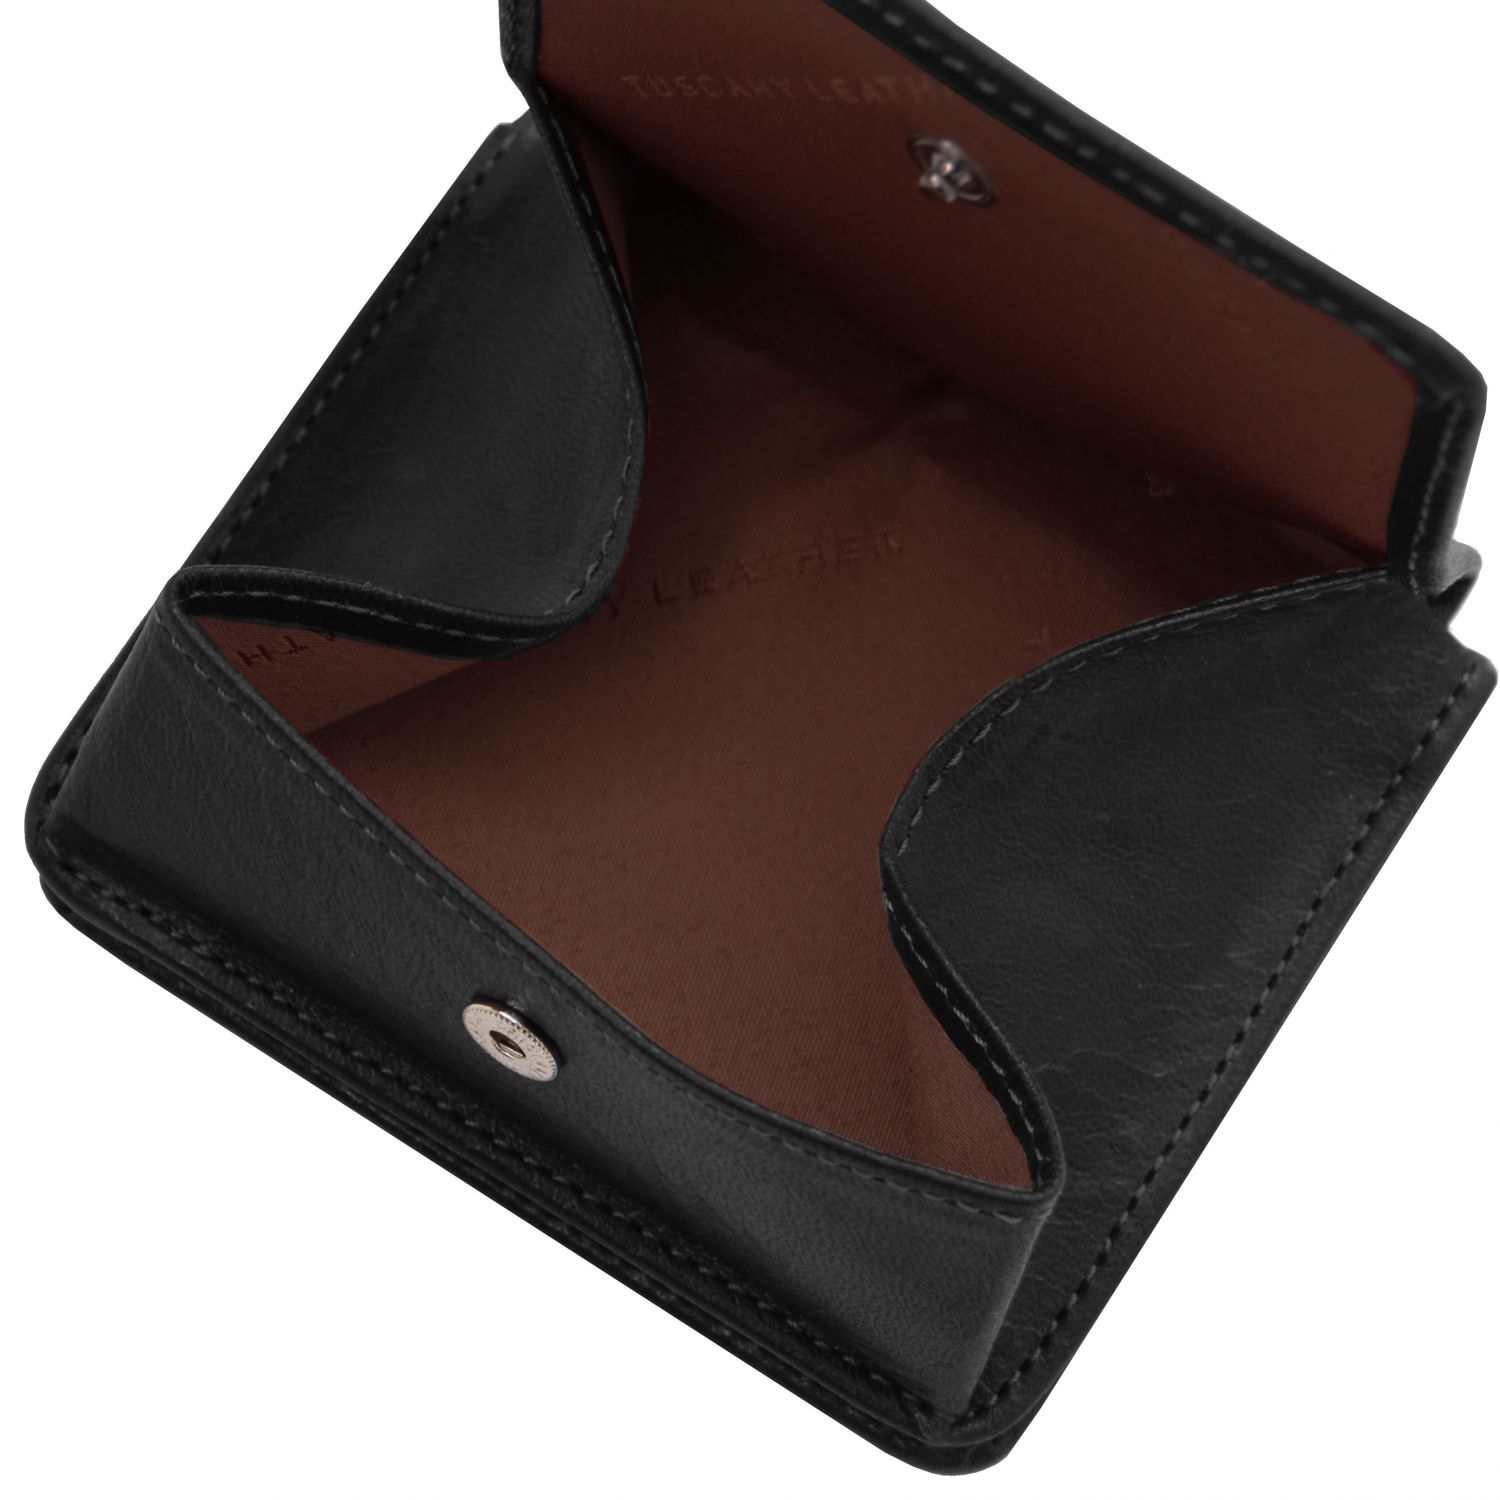 Elégant portefeuille en cuir avec porte monnaie - Noir (TL142059)